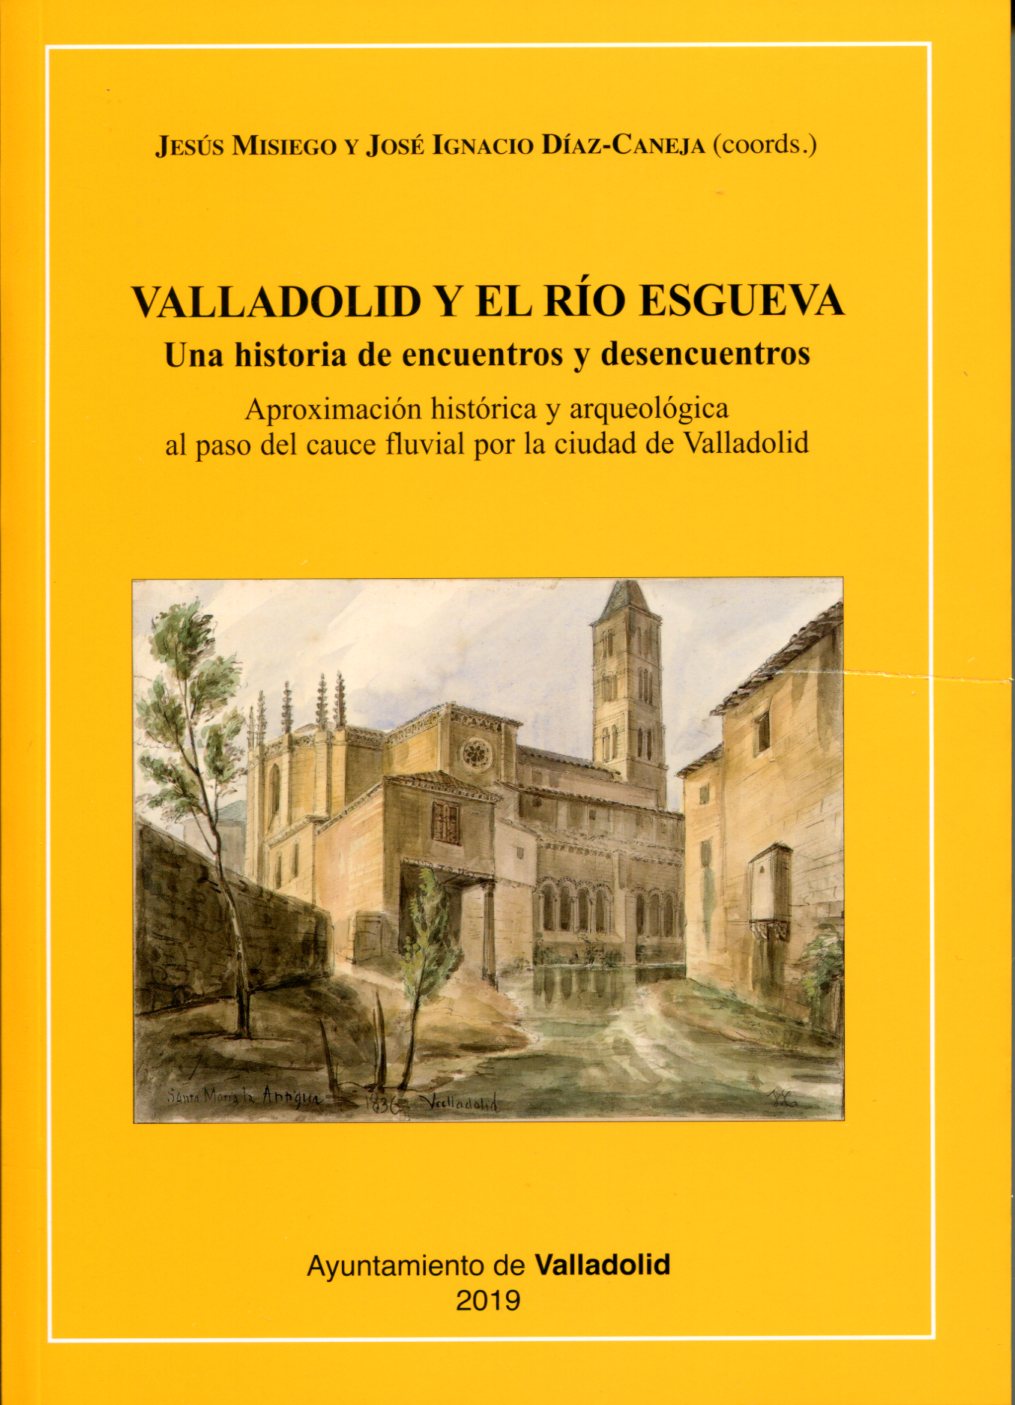 Imagen de portada del libro Valladolid y el río Esgueva. Una historia de encuentros y desencuentros